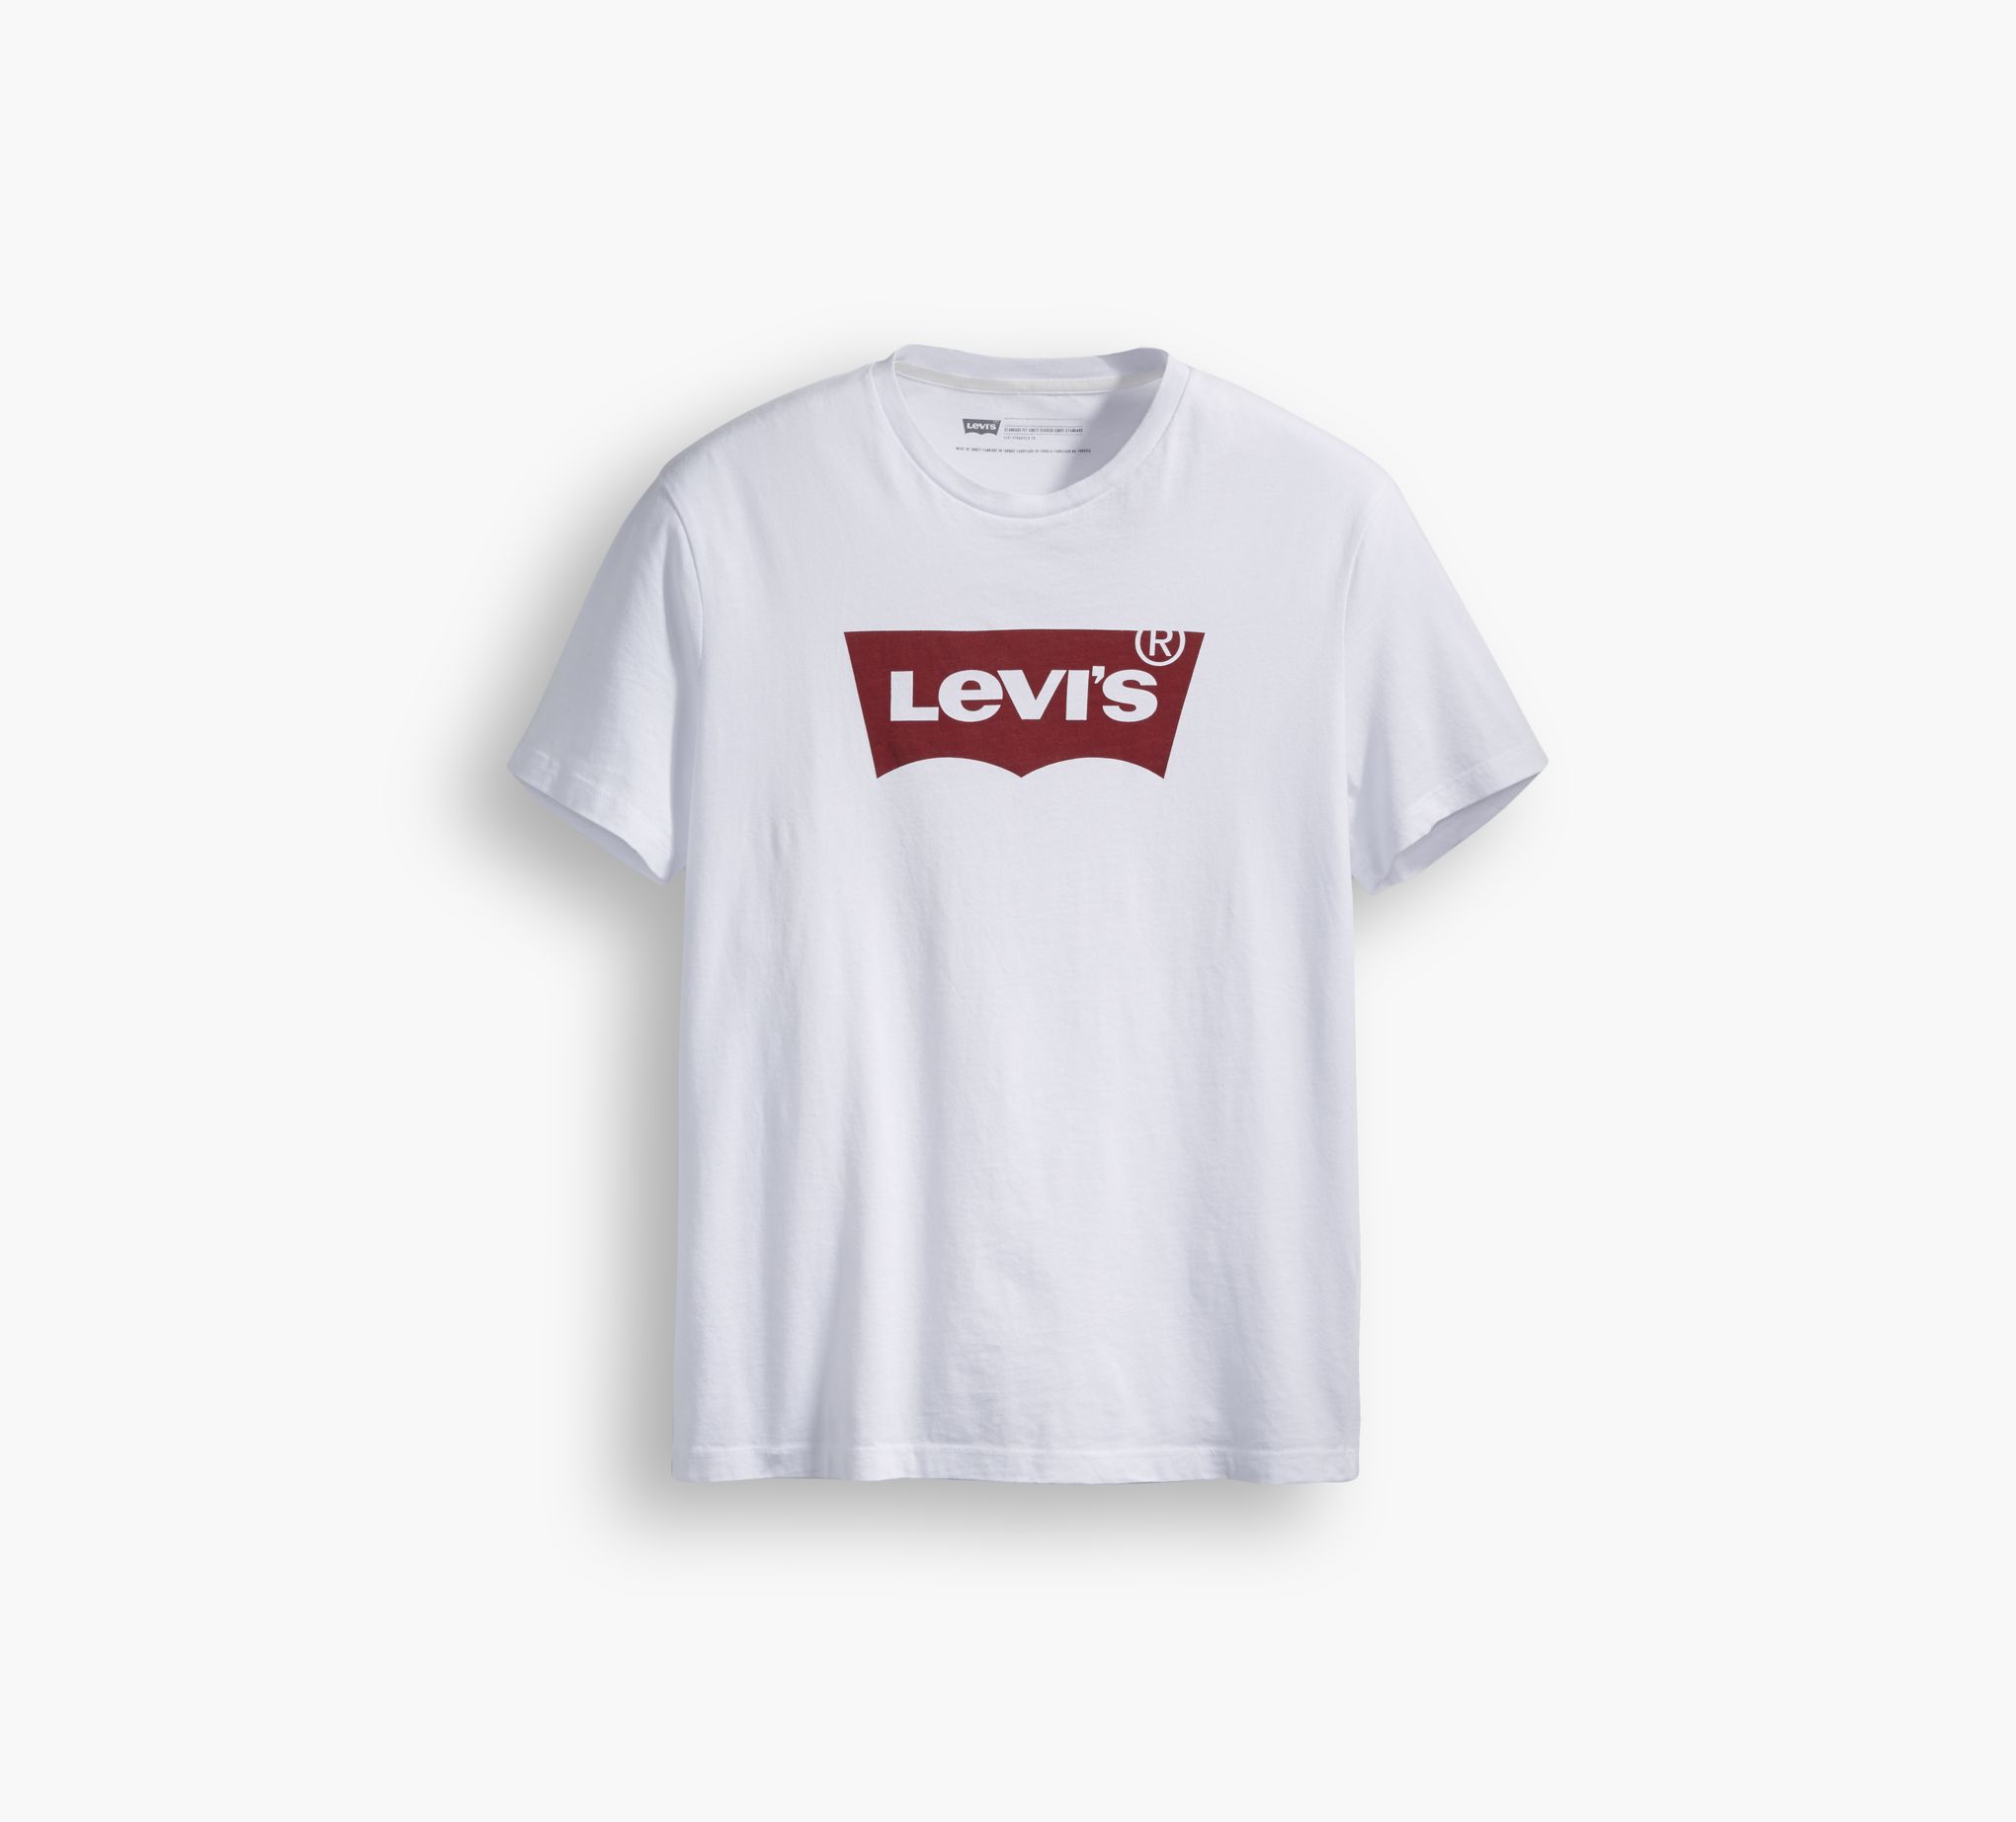 levis golf shirt